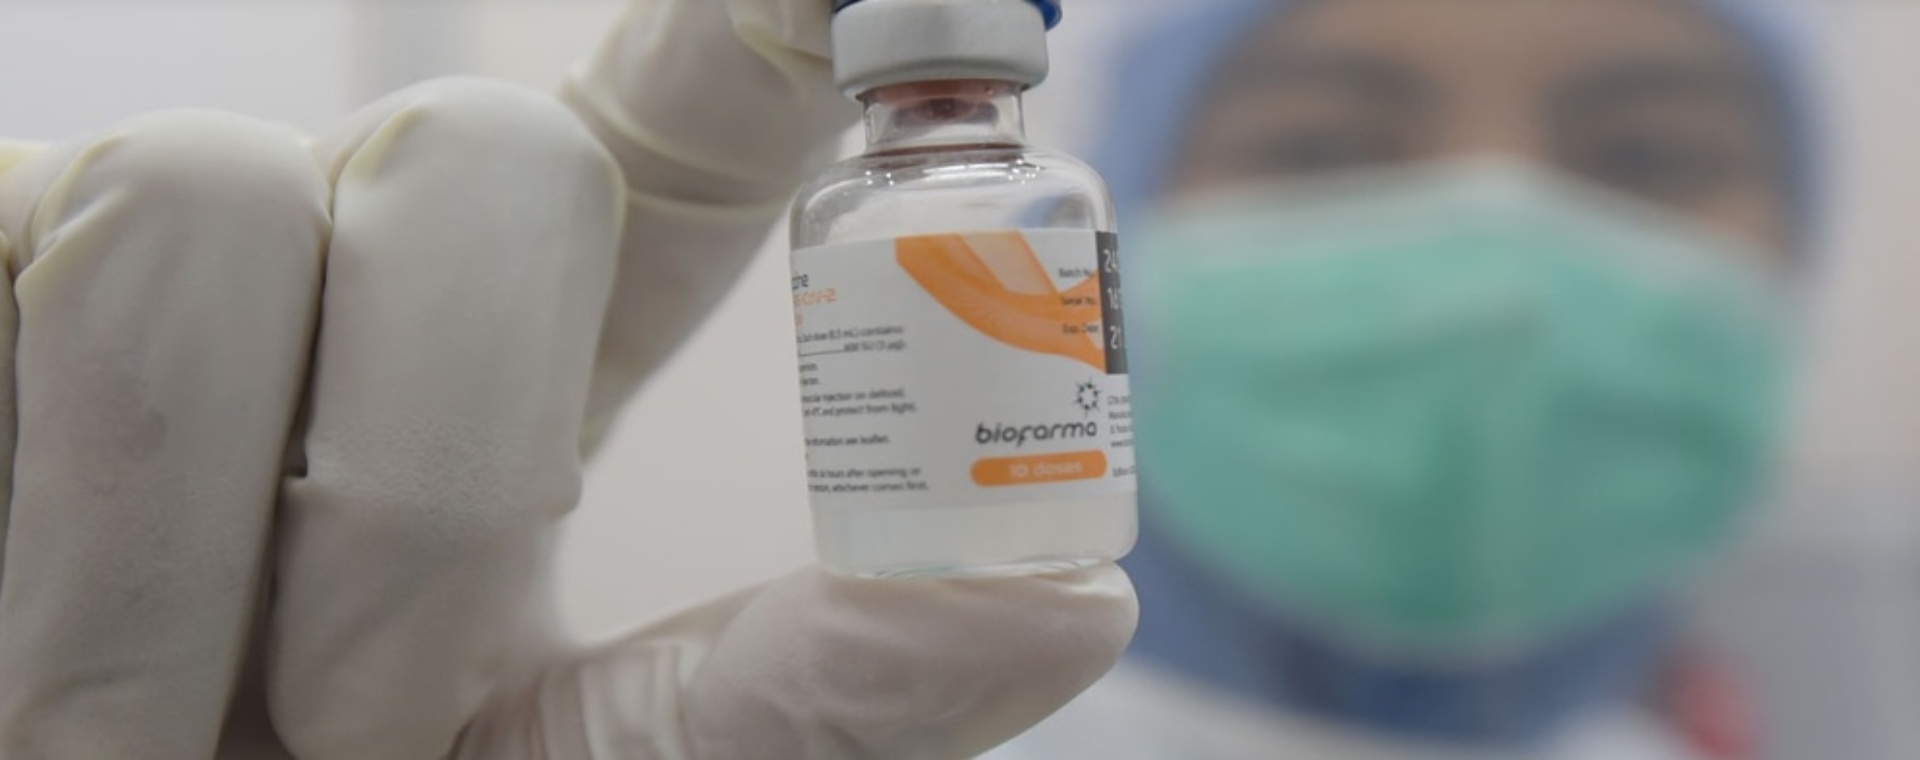 IndoVac merupakan vaksin Covid-19 berbasis teknologi subunit rekombinan protein yang diproduksi oleh PT Bio Farma (Persero). Bio Farma mulai melakukan riset dan pengembangan vaksin Covid-19 sejak November 2021–24 September 2022./Setkab.go.id